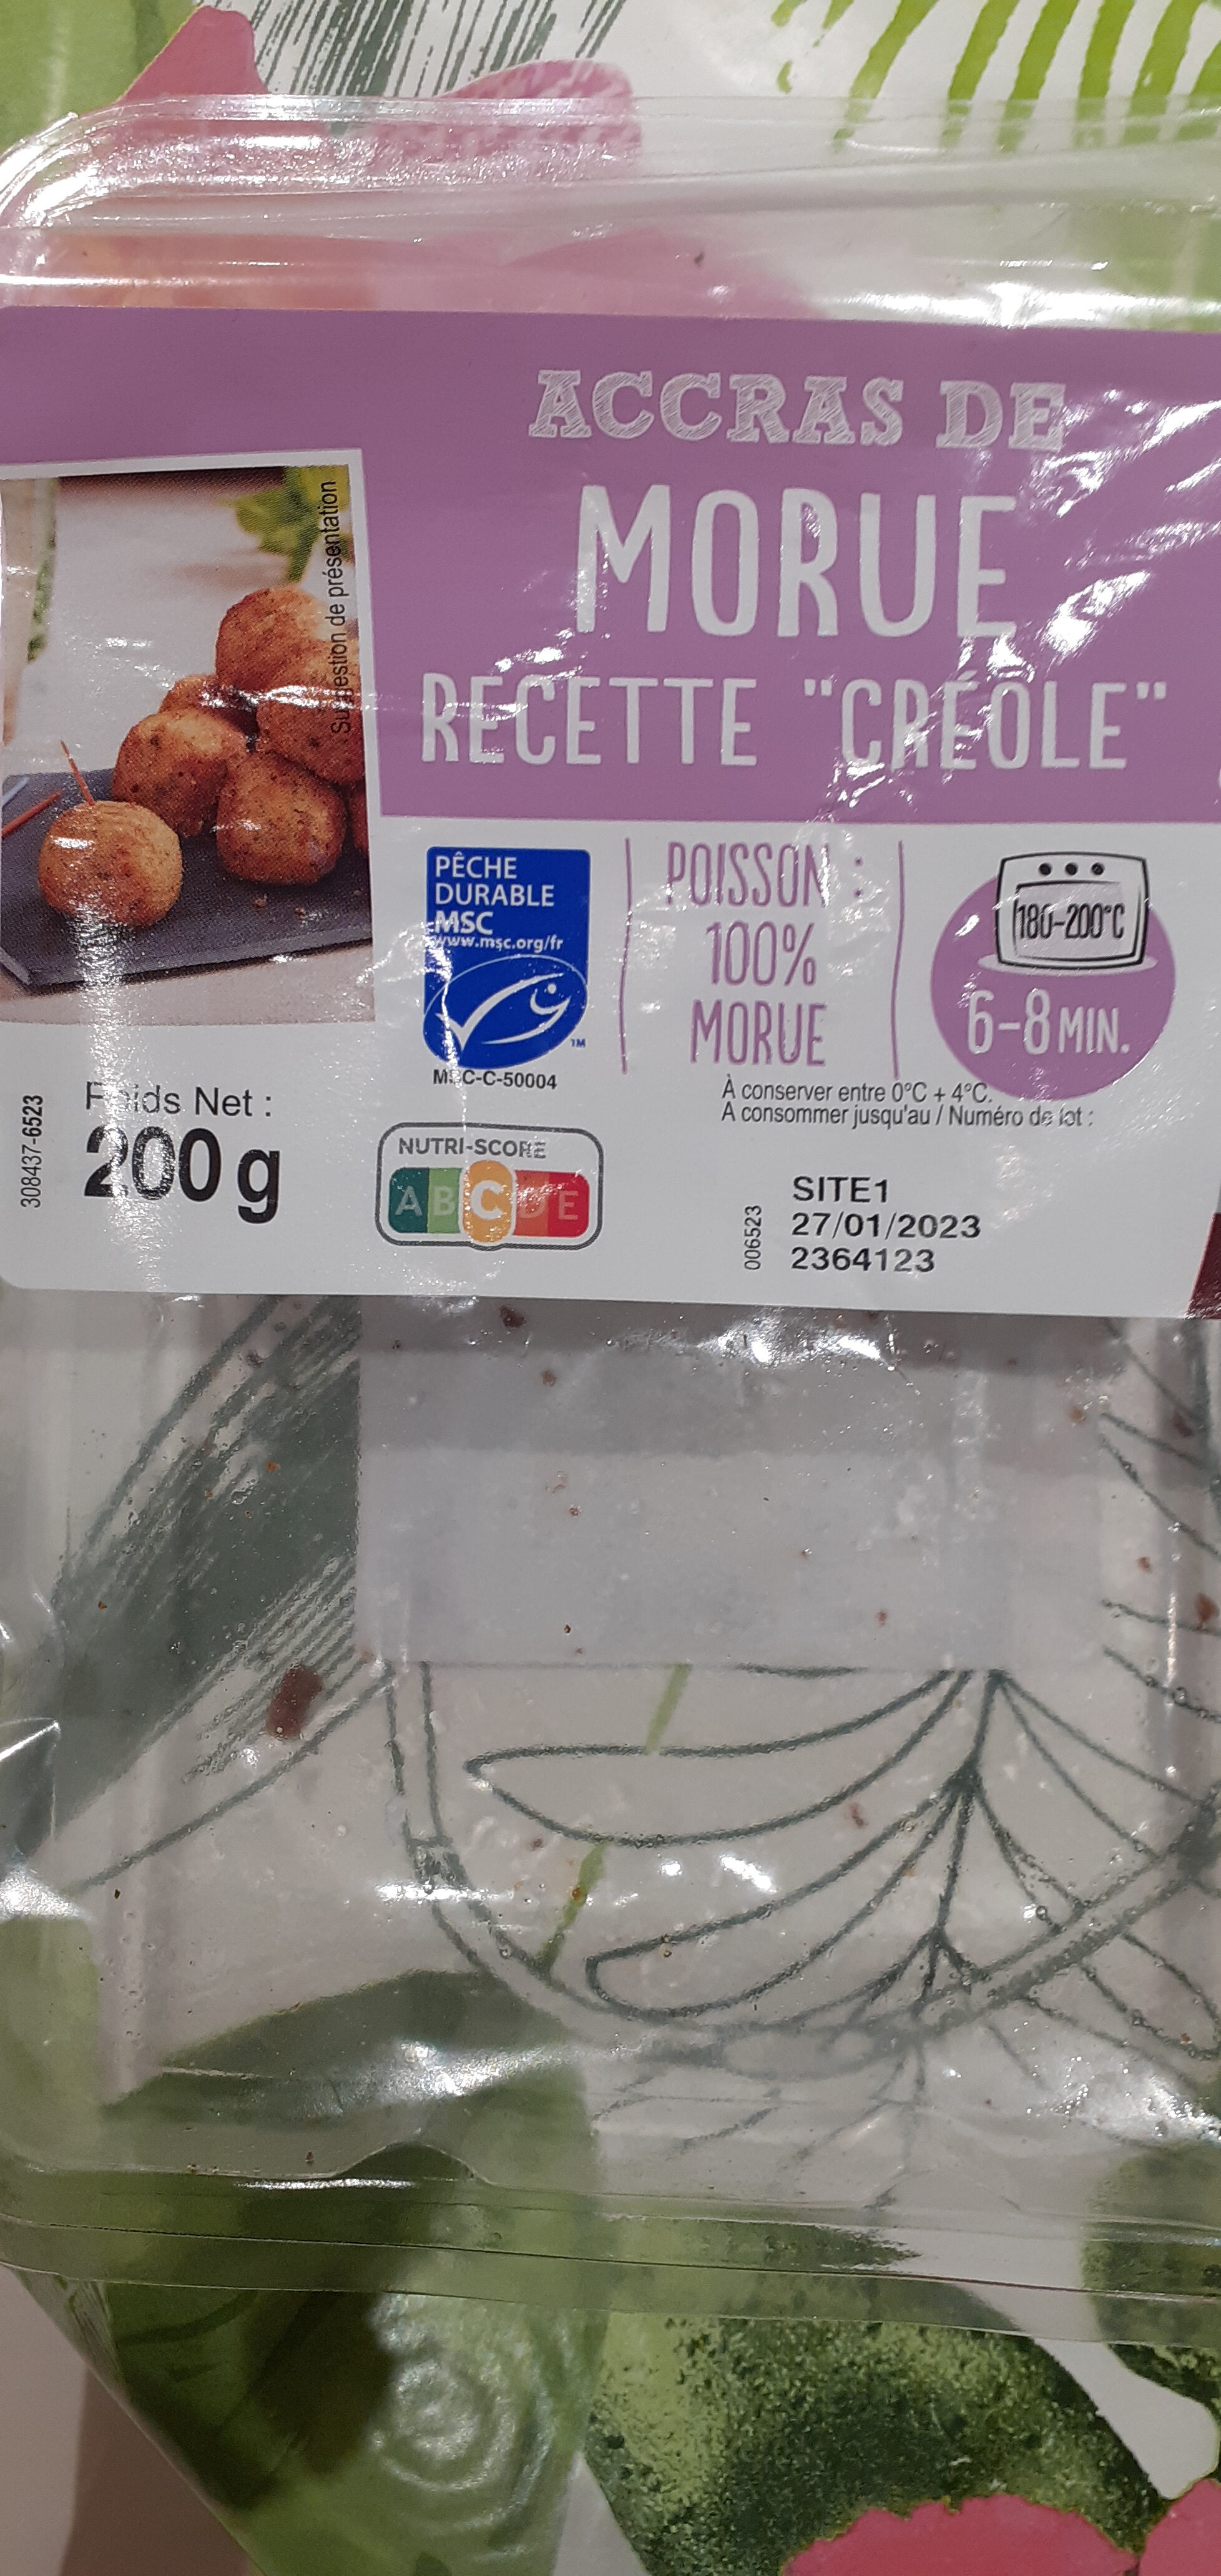 Accras de morue recette "créole" - Product - fr